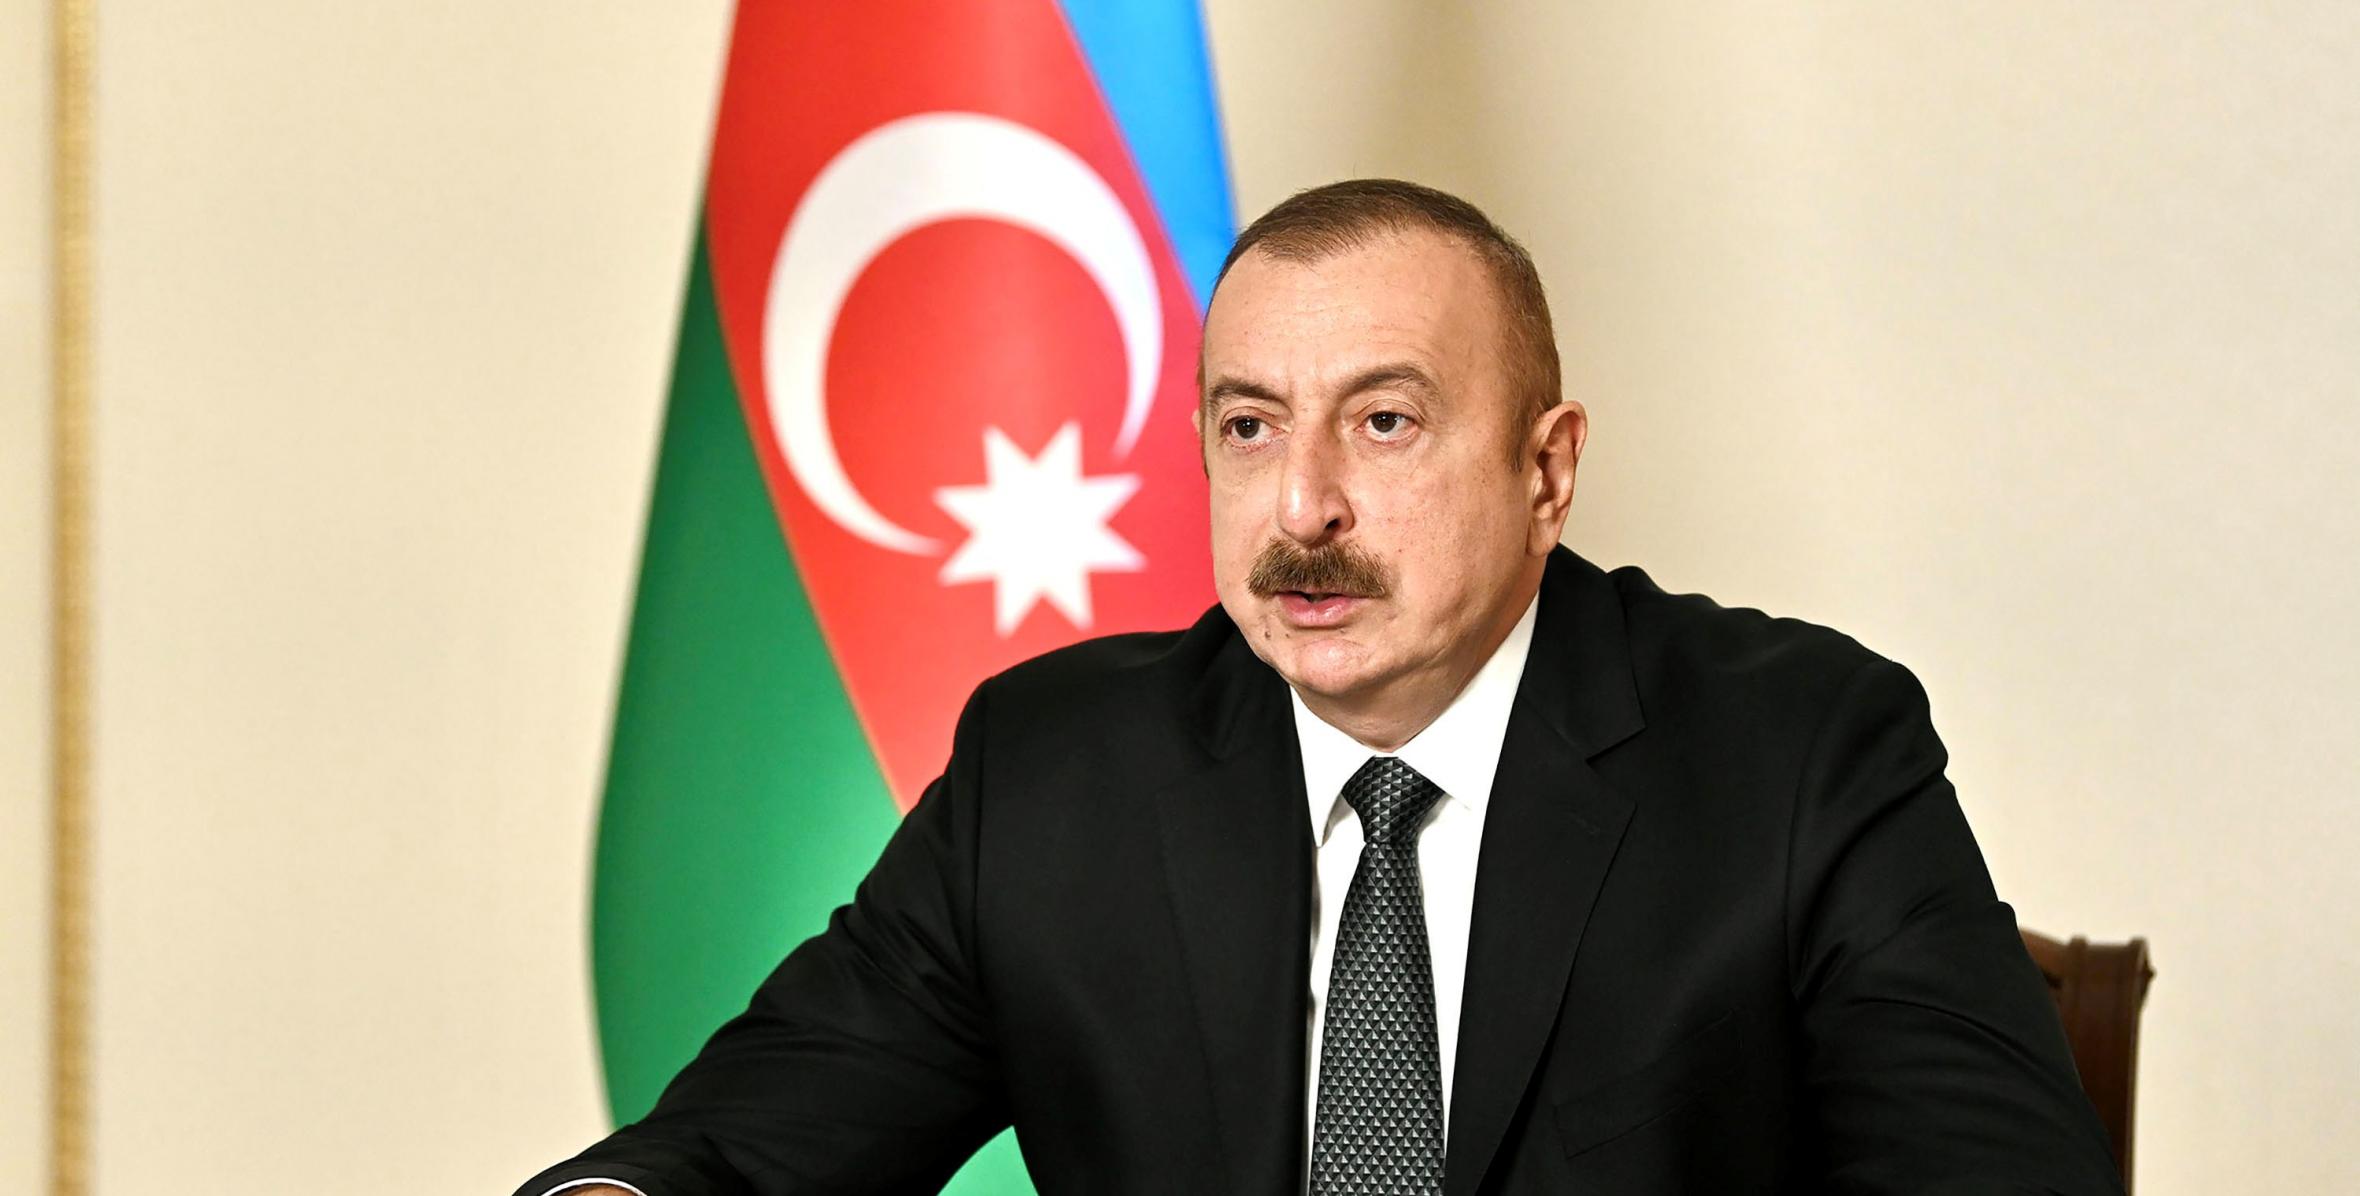 Ильхам Алиев выступил на специальной сессии Генеральной Ассамблеи ООН на уровне глав государств и правительств, посвященной борьбе с COVID-19